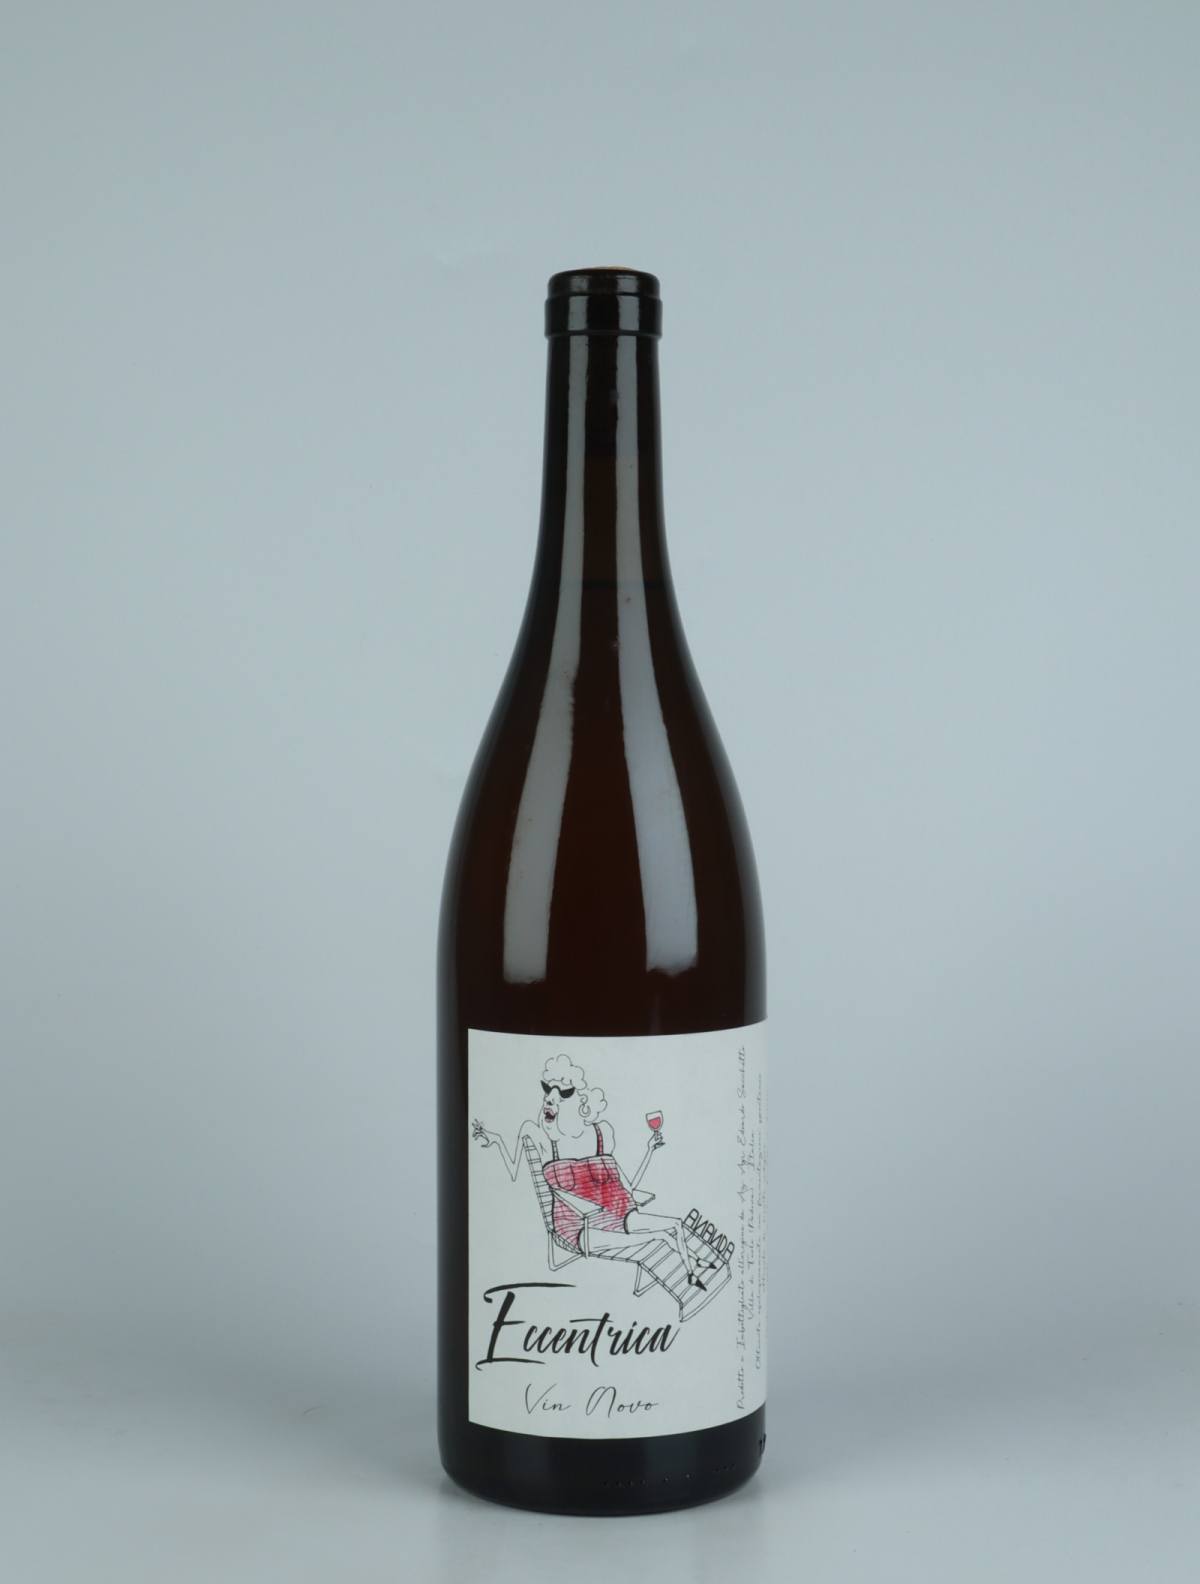 A bottle 2022 Eccentrica White wine from Edoardo Sacchetto, Veneto in Italy